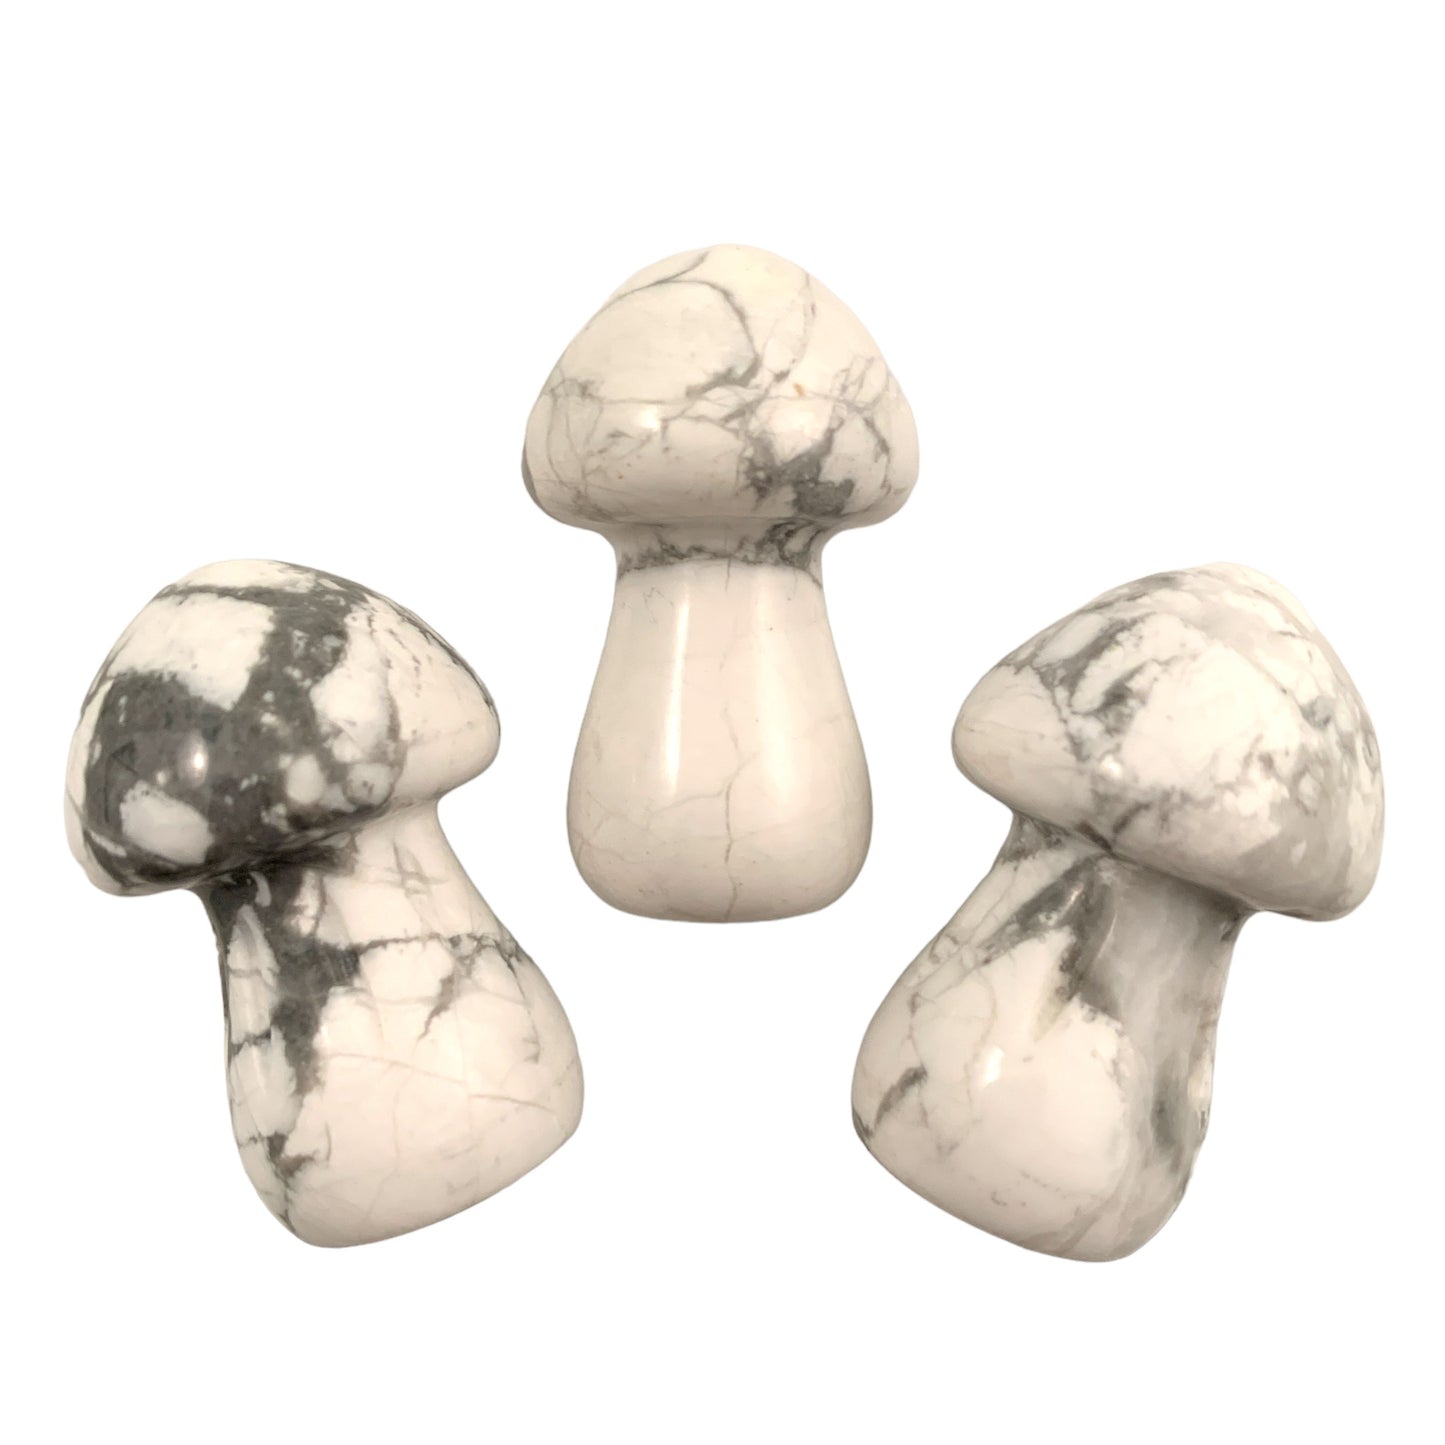 Mushrooms SMALL White Howlite - 35mm - Price Each - China - NEW722